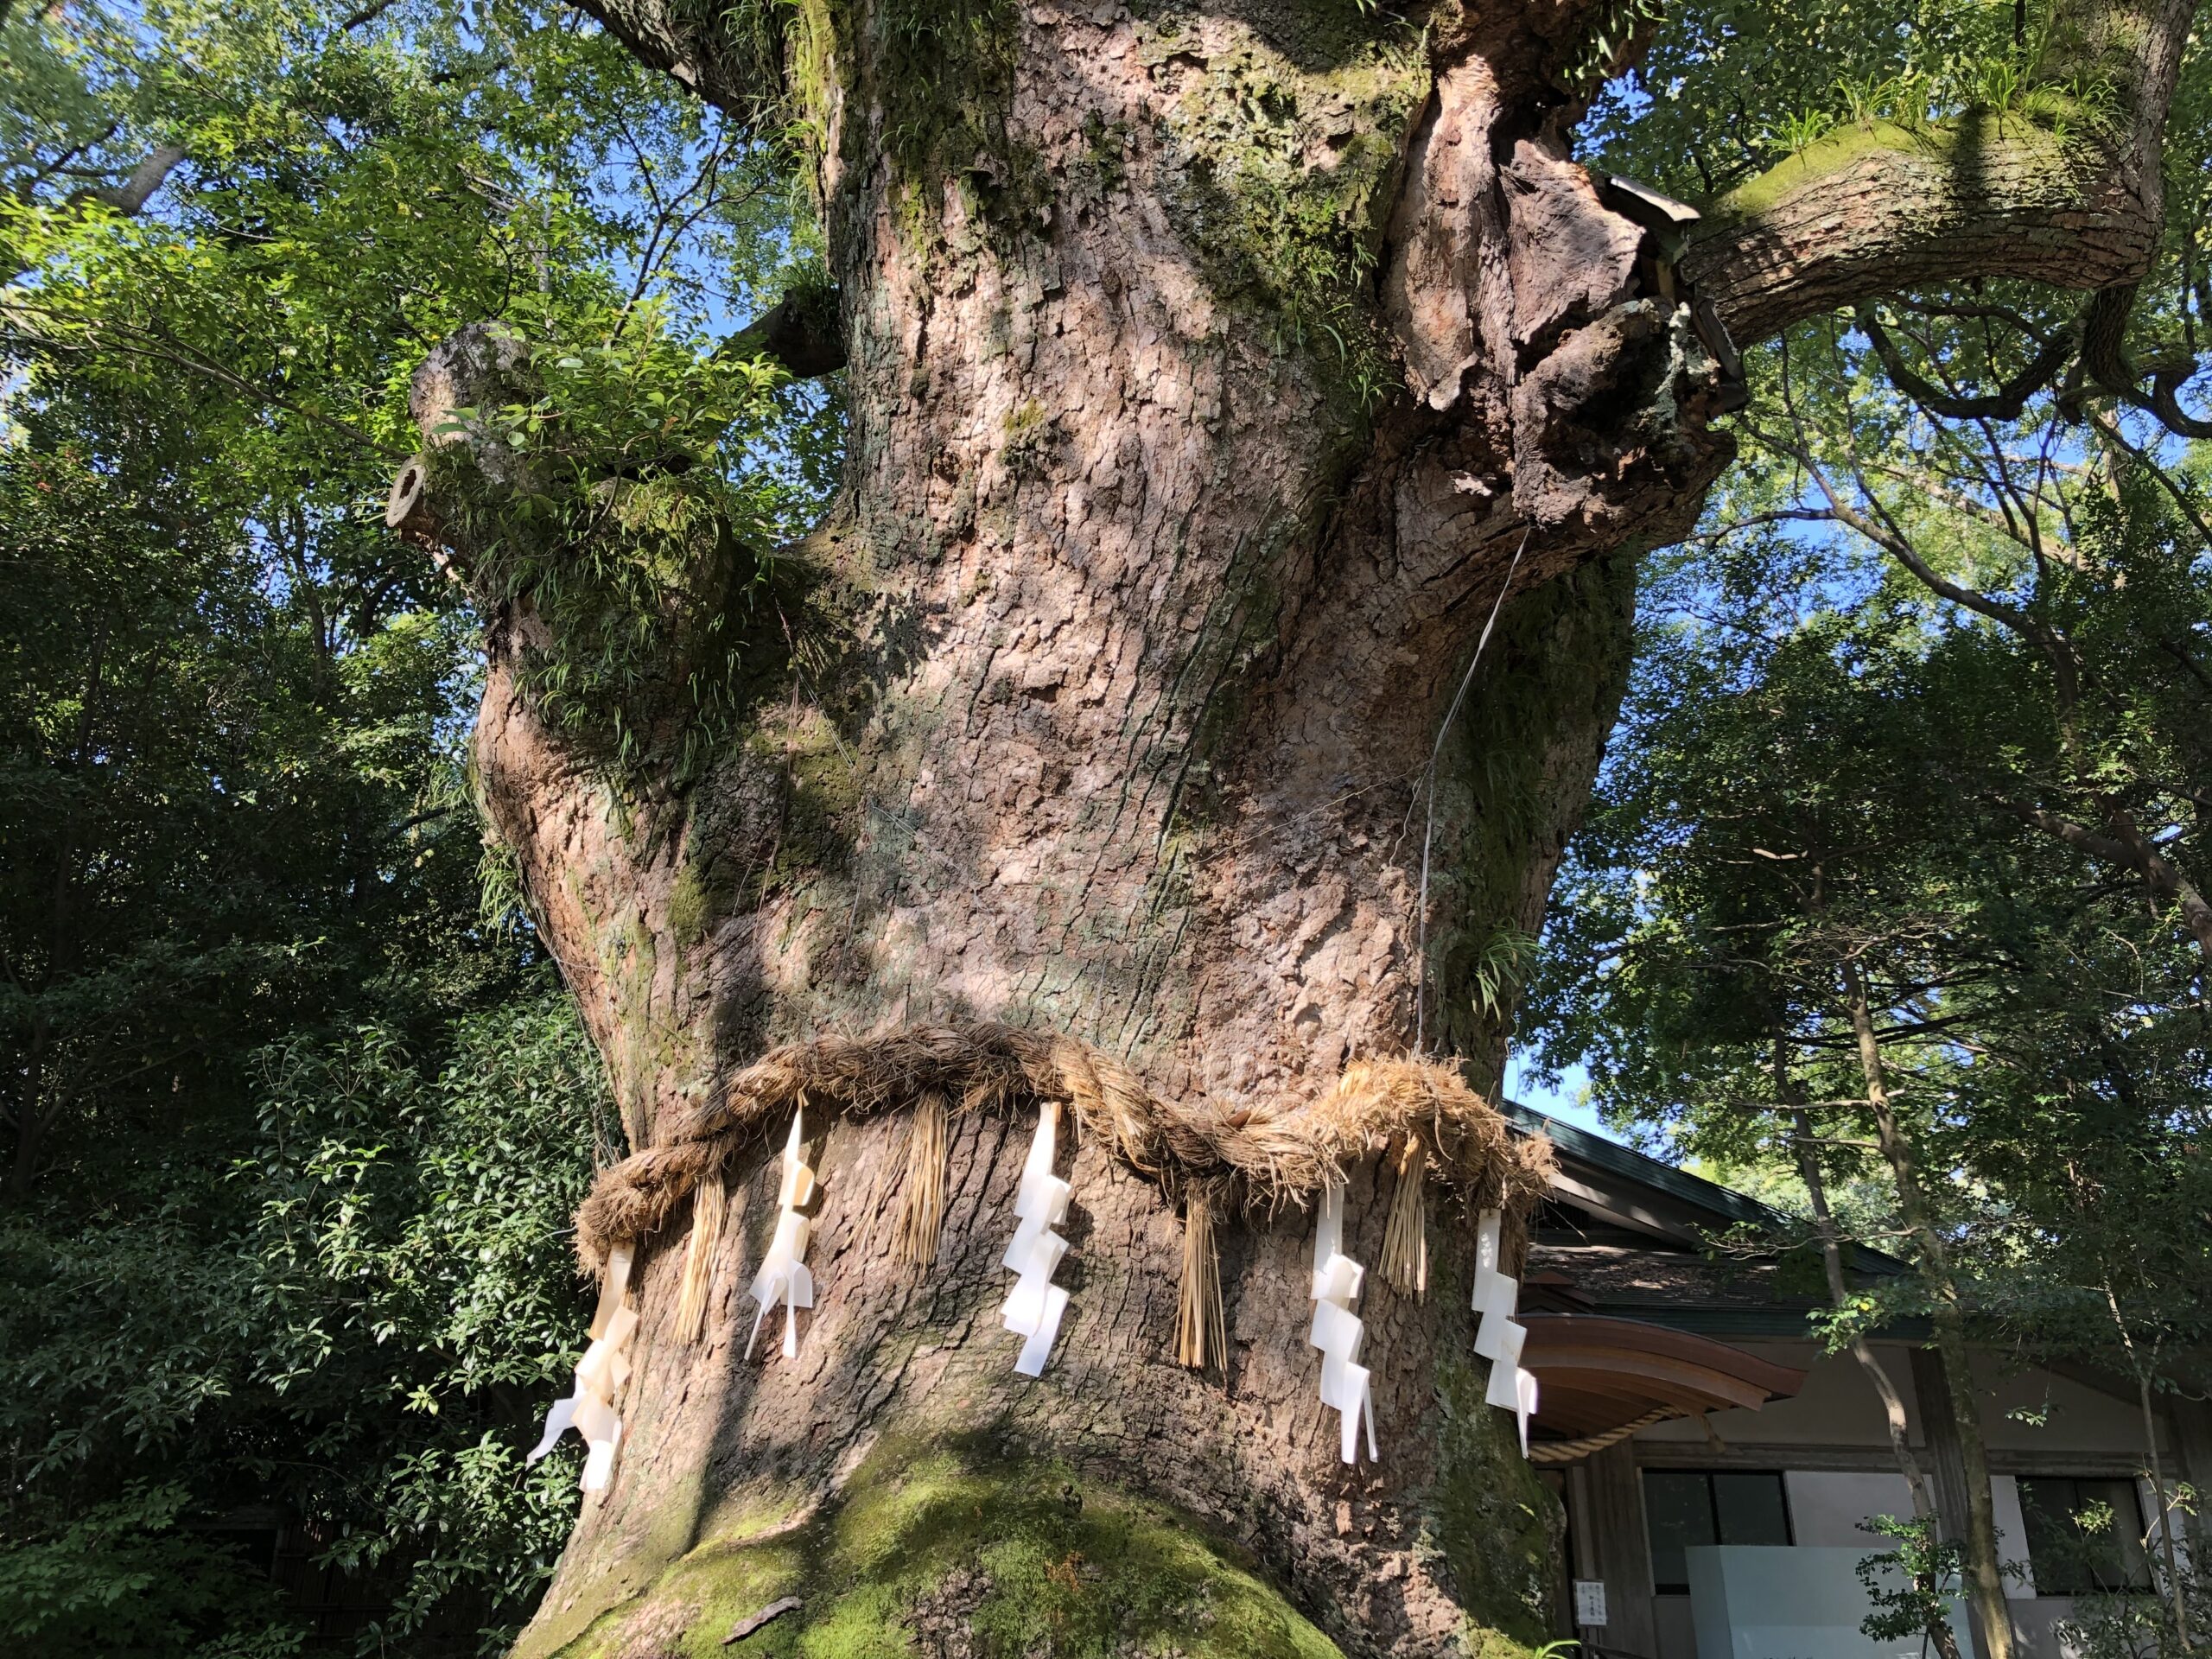 Shimenawa mit Shide an einem heiligen Baum